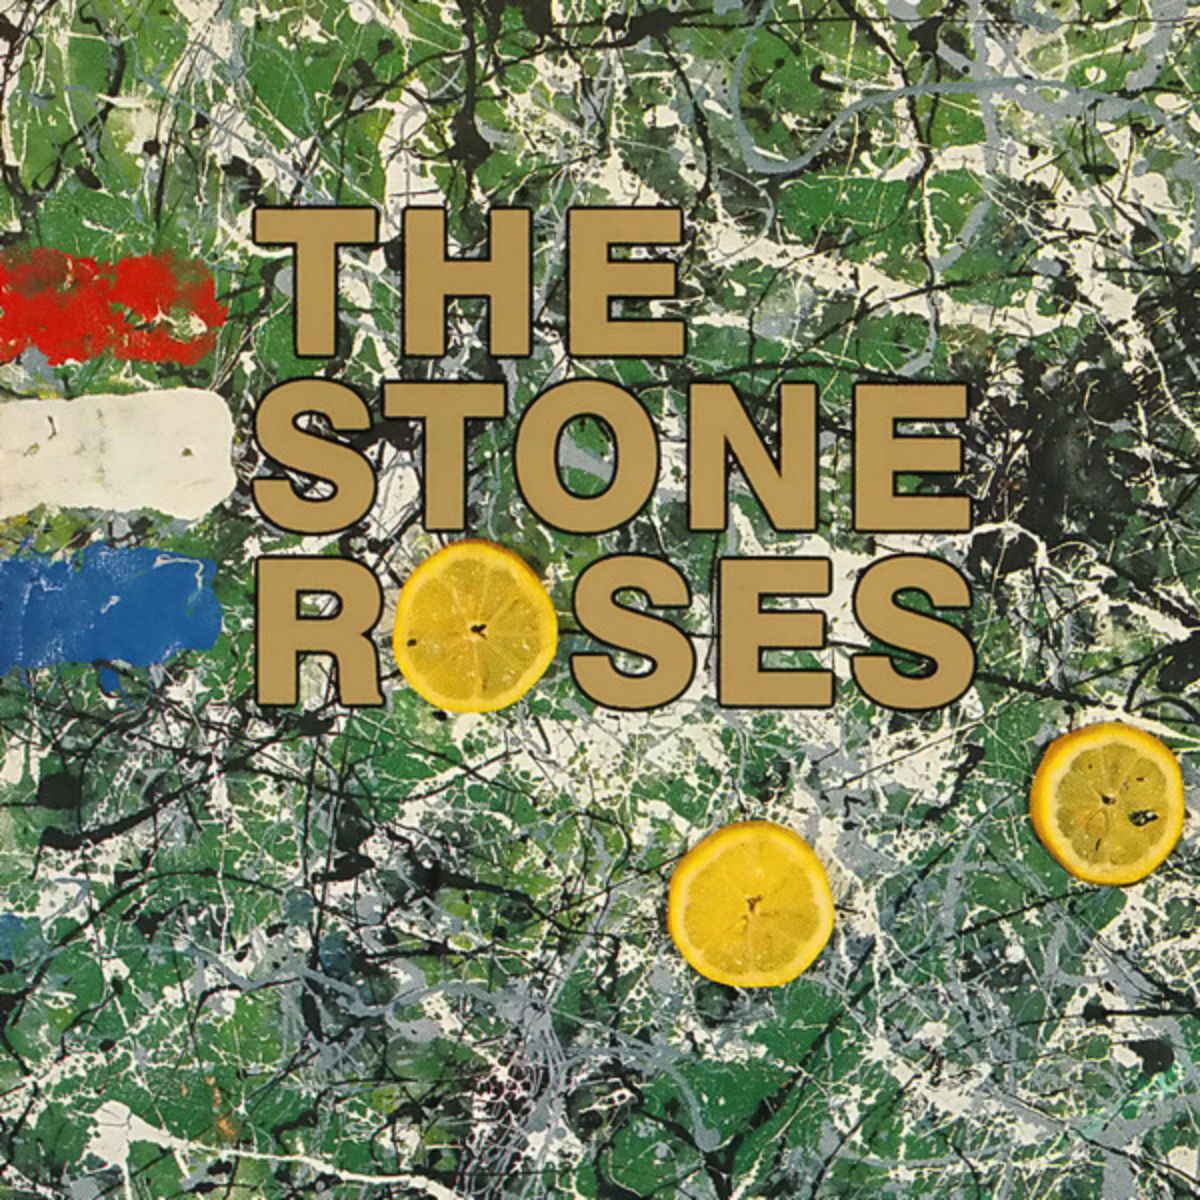 The stone roses album (1989)